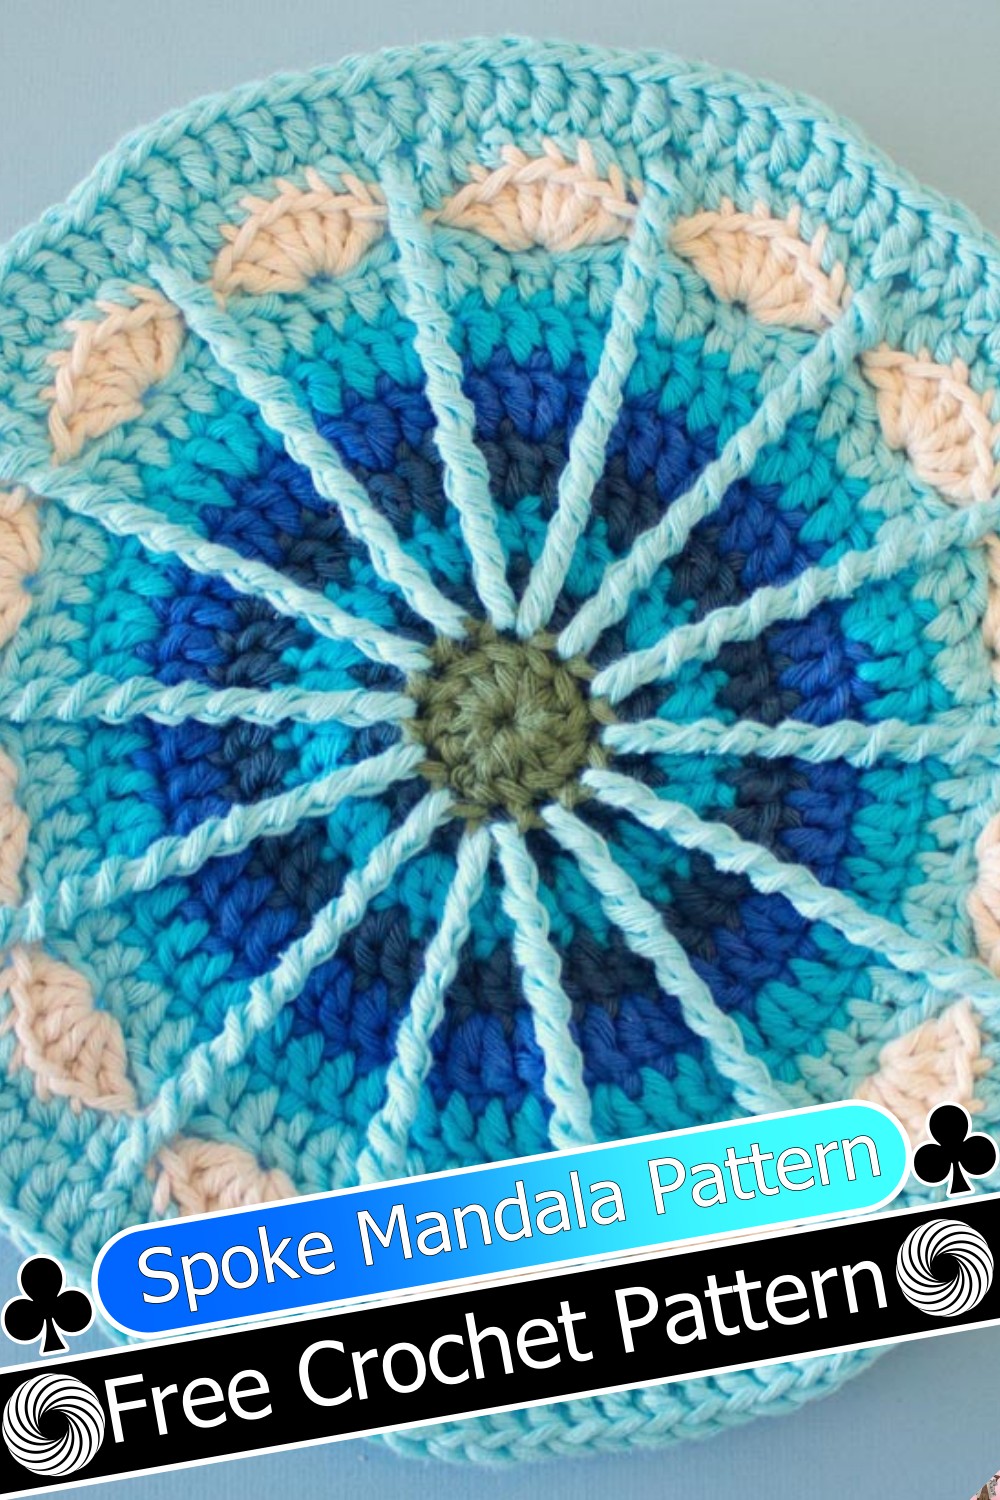 Spoke Mandala Pattern